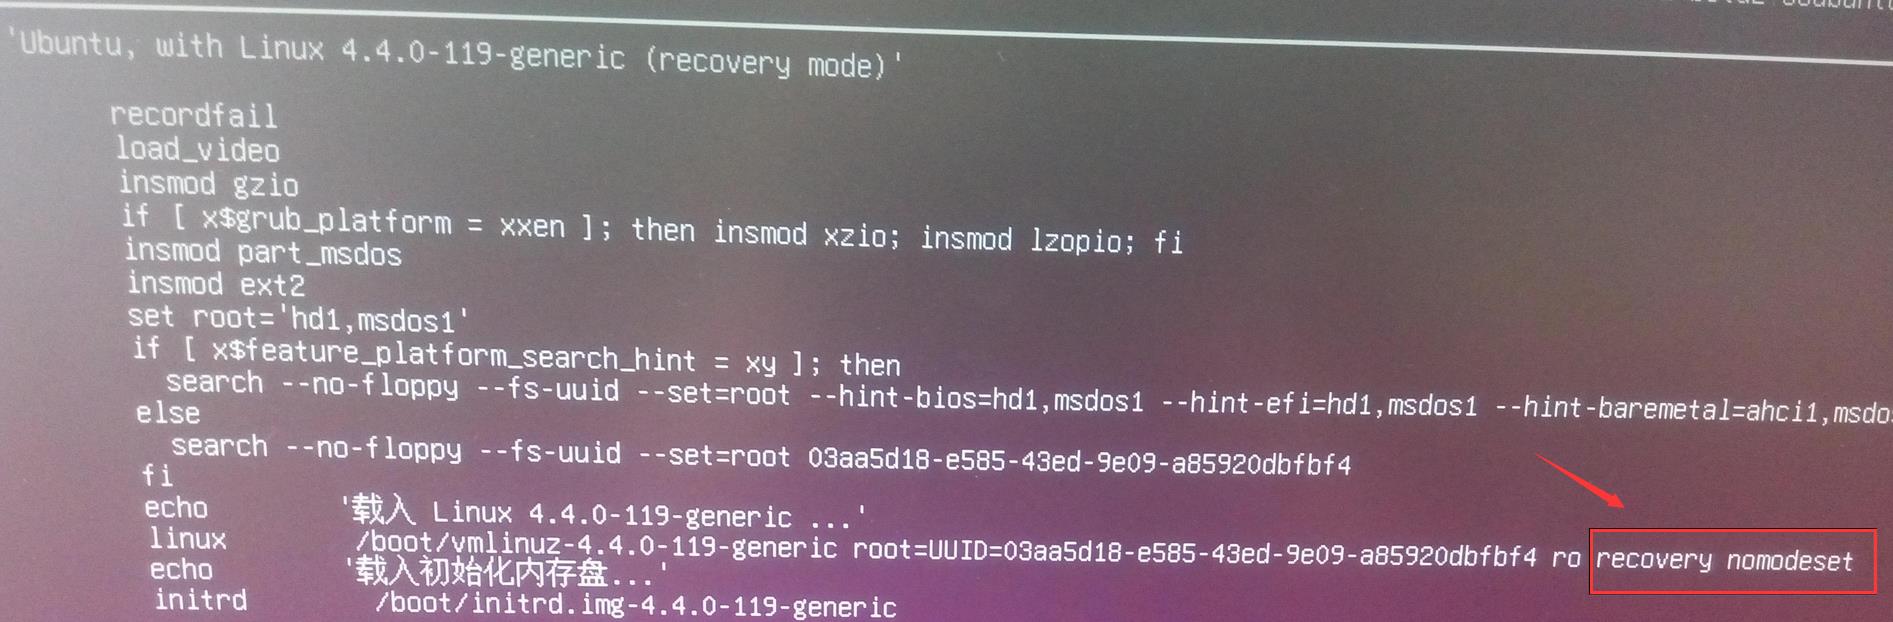 学习笔记109—Ubuntu16.04 LTS用户忘记登录密码的解决办法 - 文章图片